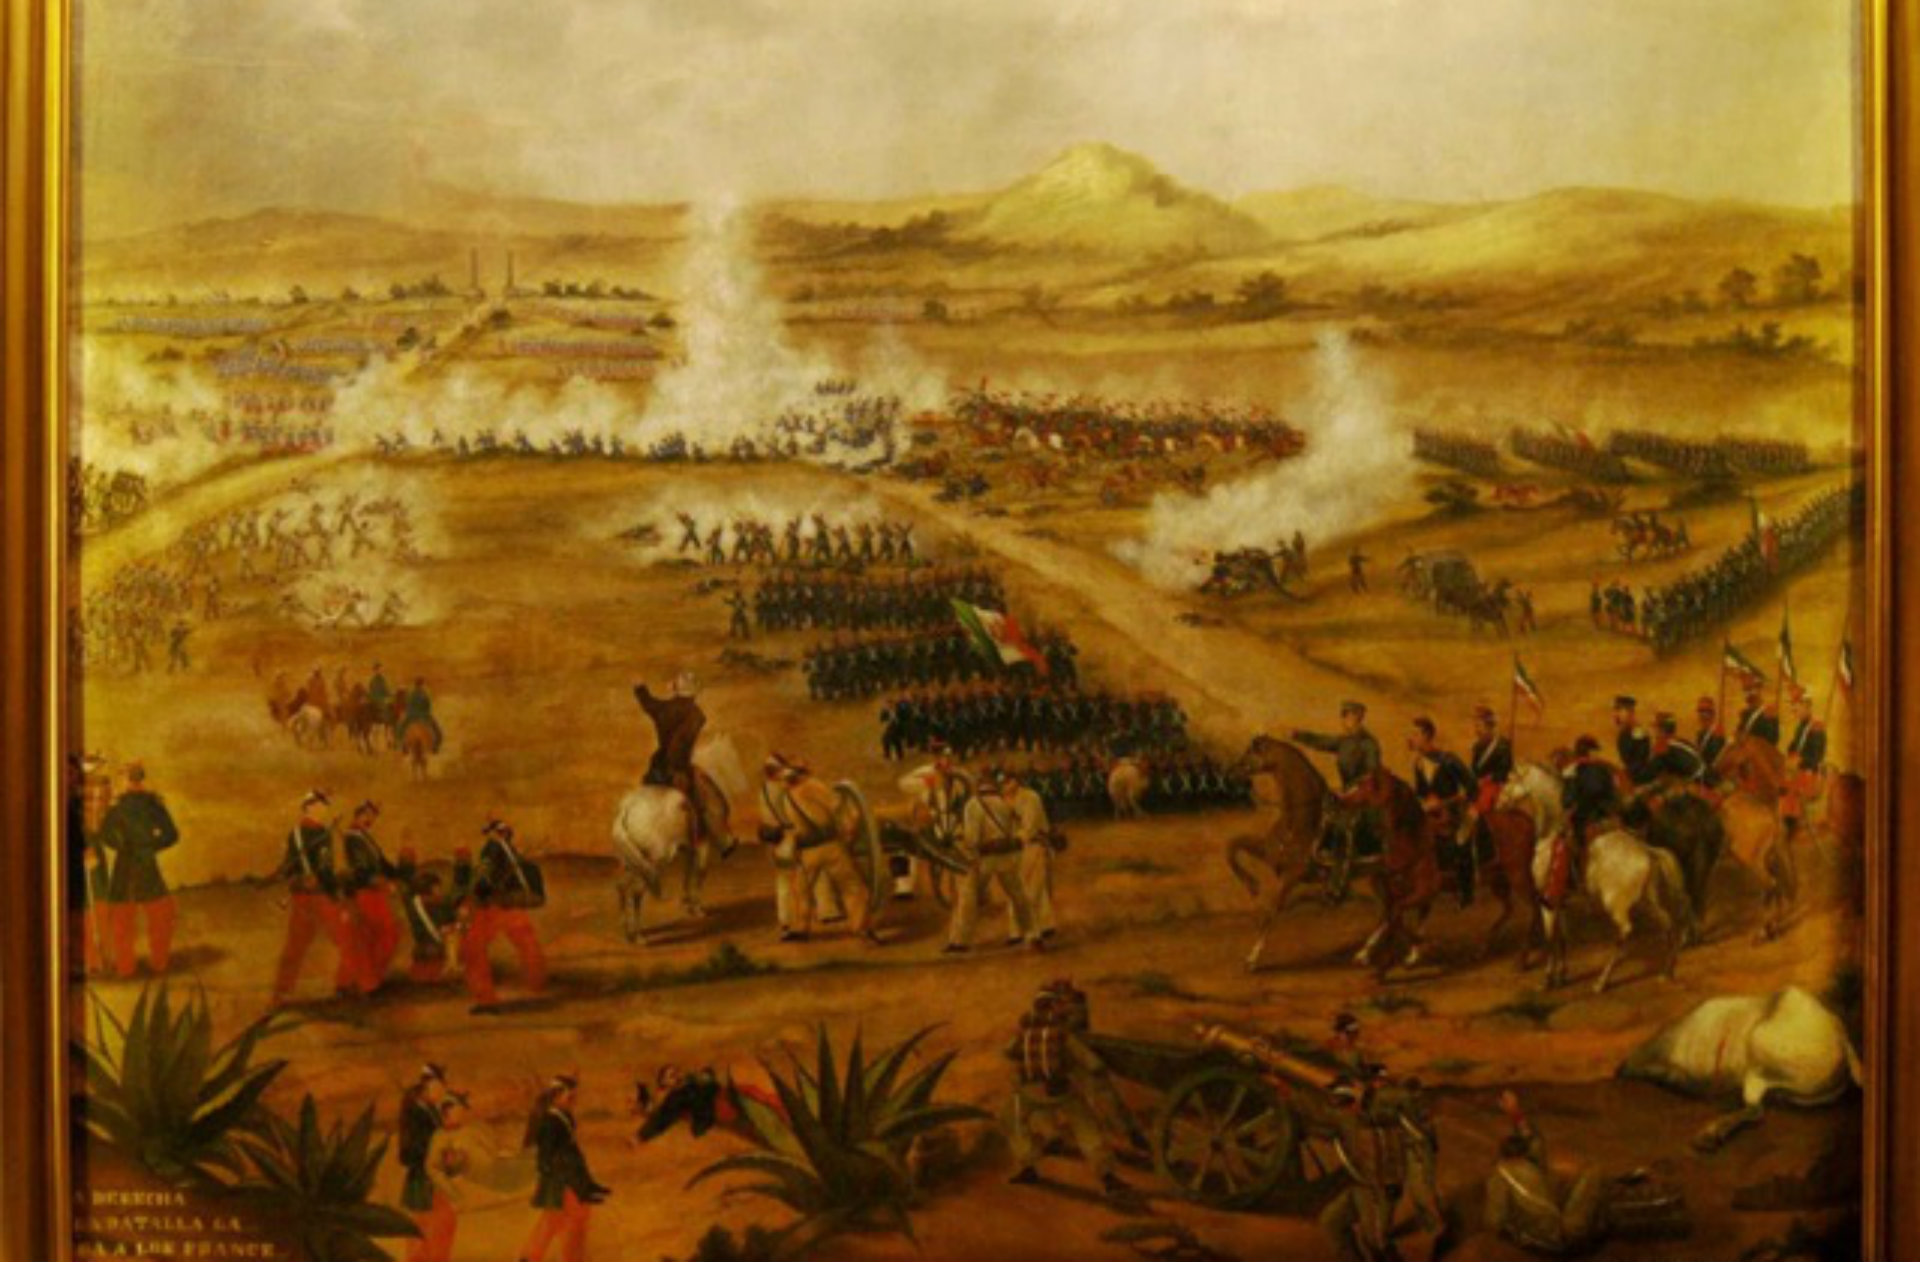 5 de Mayo del 2012 - CL Aniversario de la Batalla de Puebla - Página 3 2T3R4U33DNDHPHHSGLAM5L5I2A